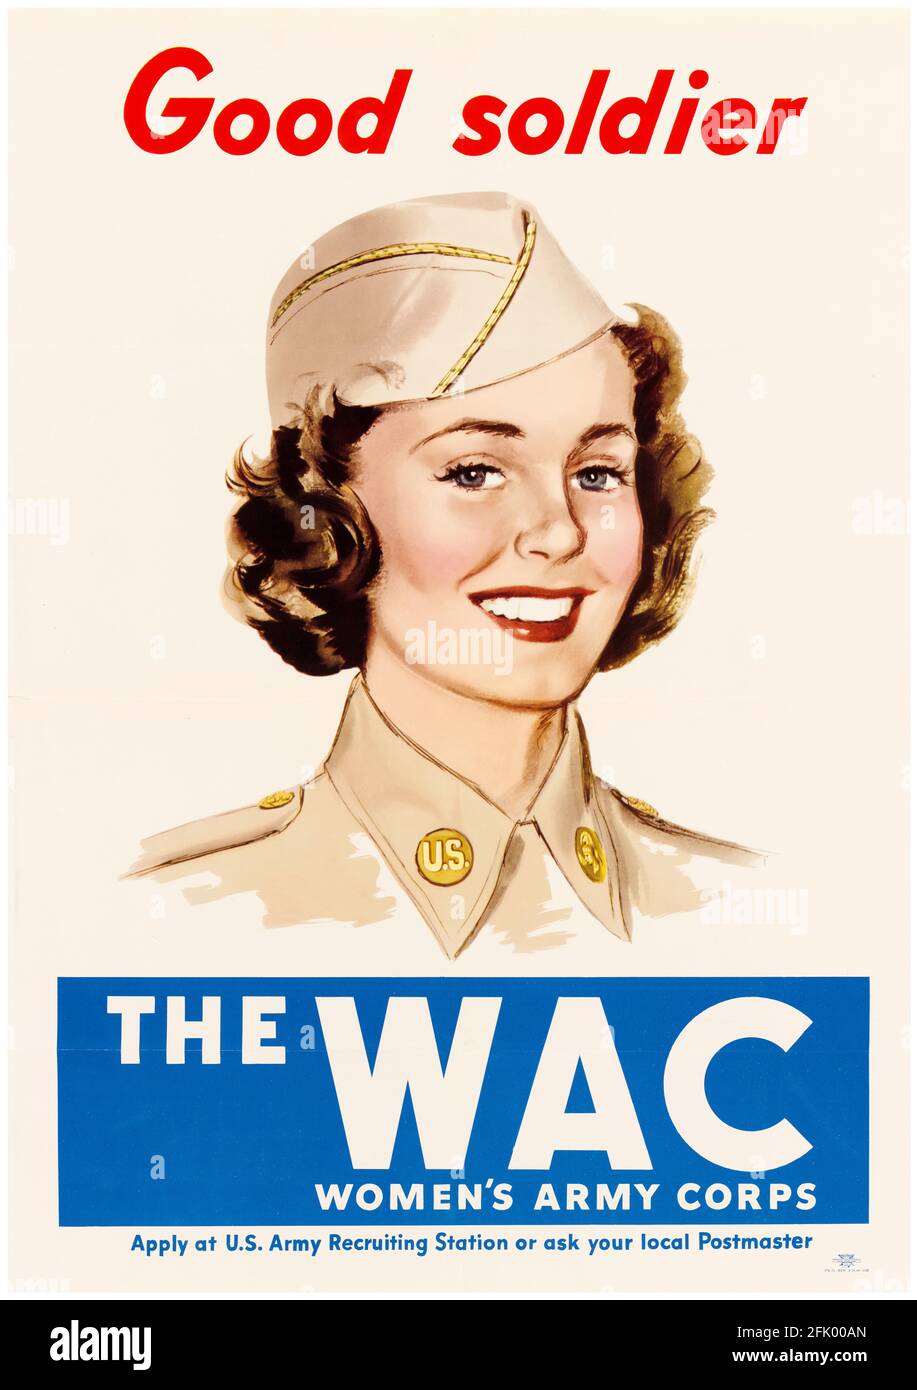 Good Soldier, WAC, Women's Army corps, American, affiche de travail de guerre féminine de la Seconde Guerre mondiale, 1941-1945 Banque D'Images